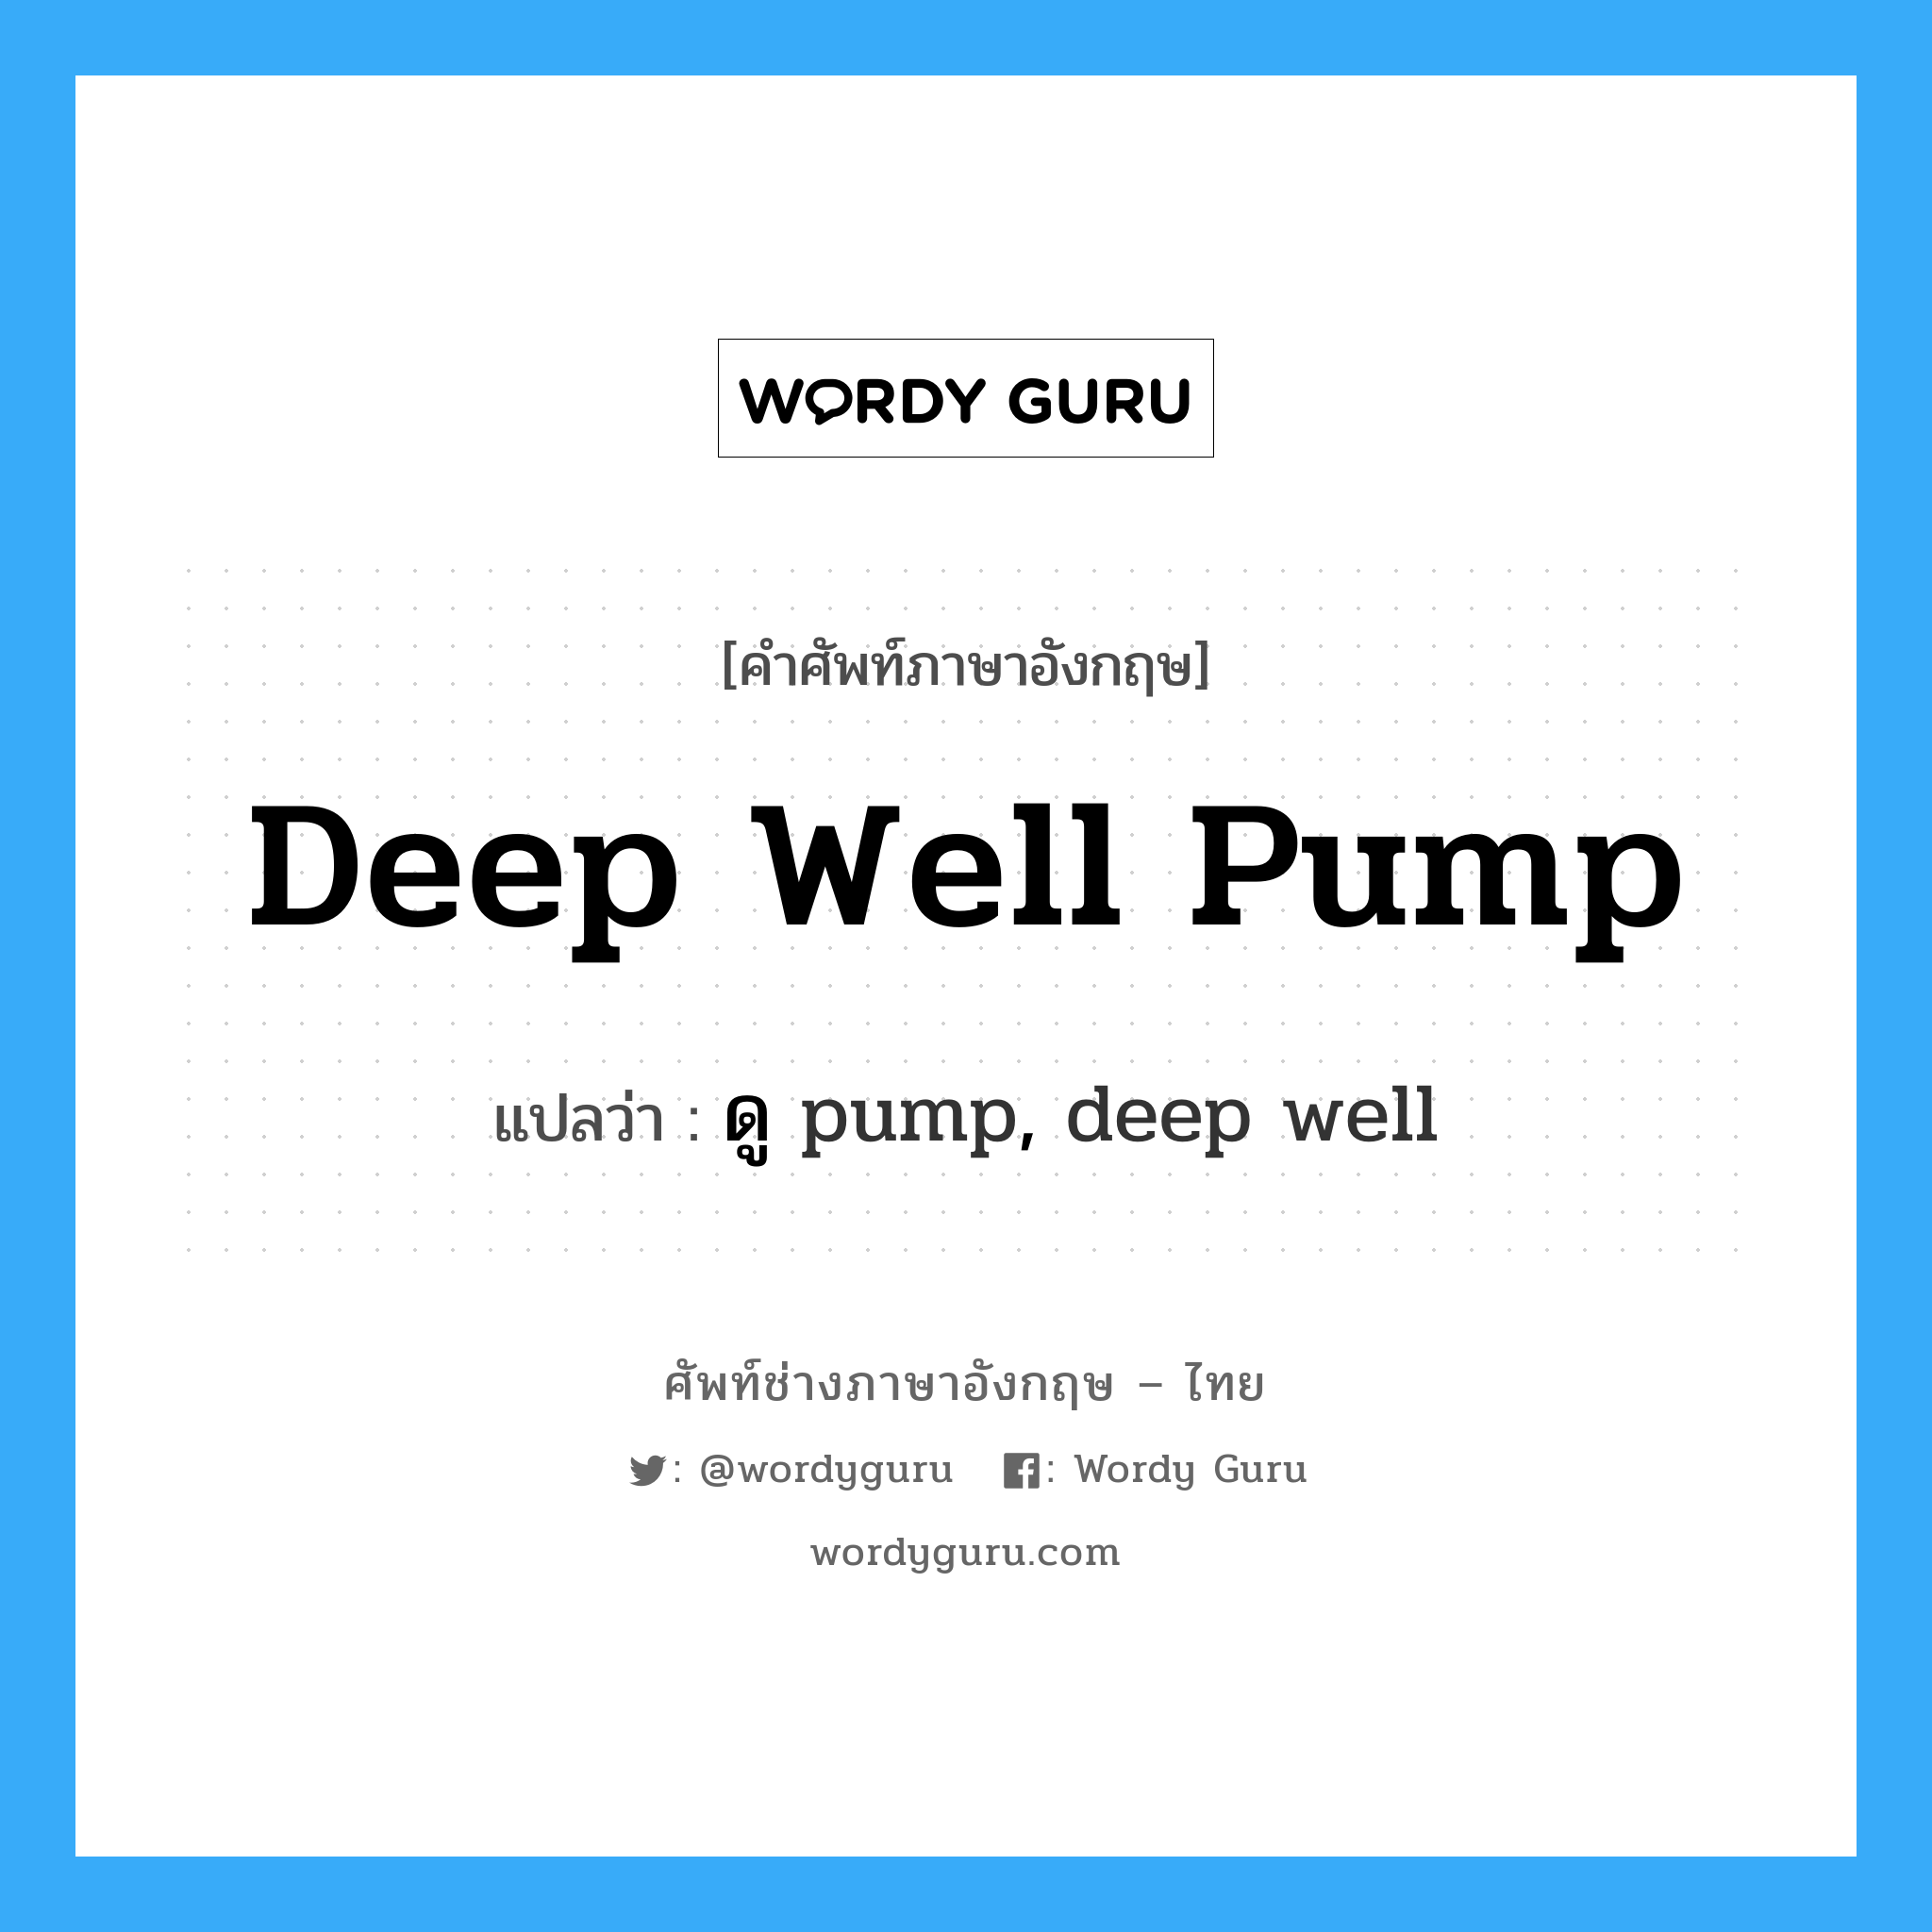 deep well pump แปลว่า?, คำศัพท์ช่างภาษาอังกฤษ - ไทย deep well pump คำศัพท์ภาษาอังกฤษ deep well pump แปลว่า ดู pump, deep well